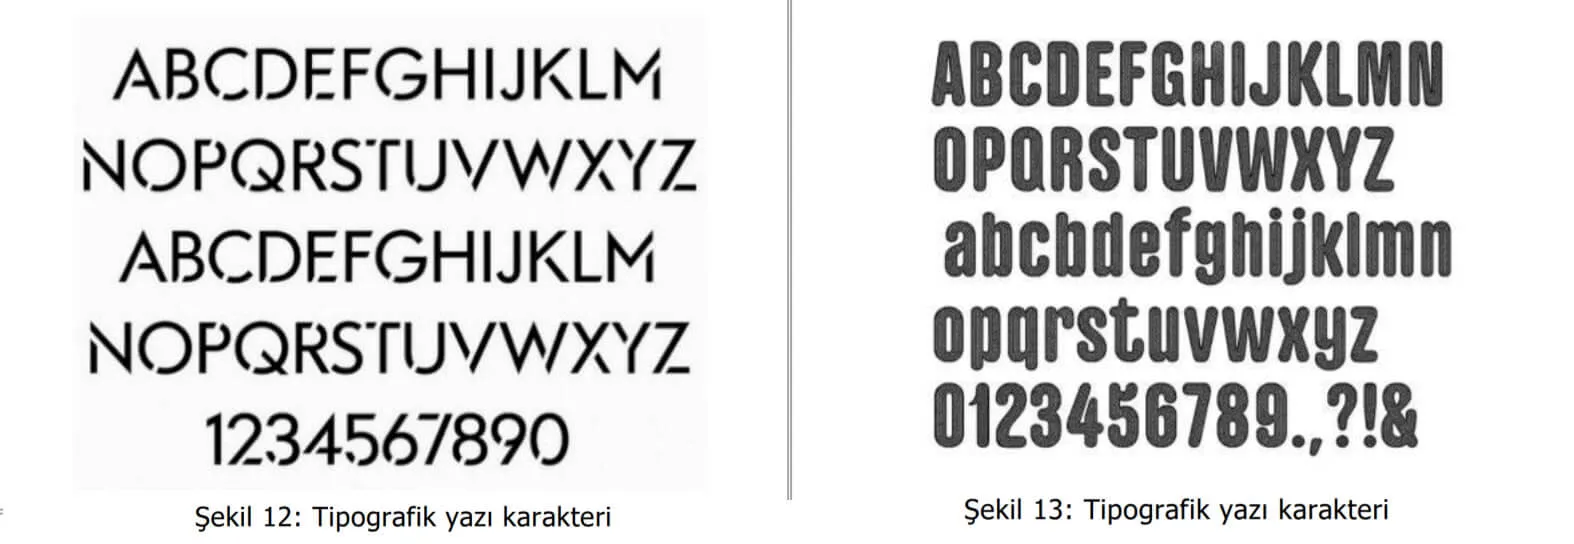 tipografik yazı karakter örnekleri-karşıyaka web tasarım